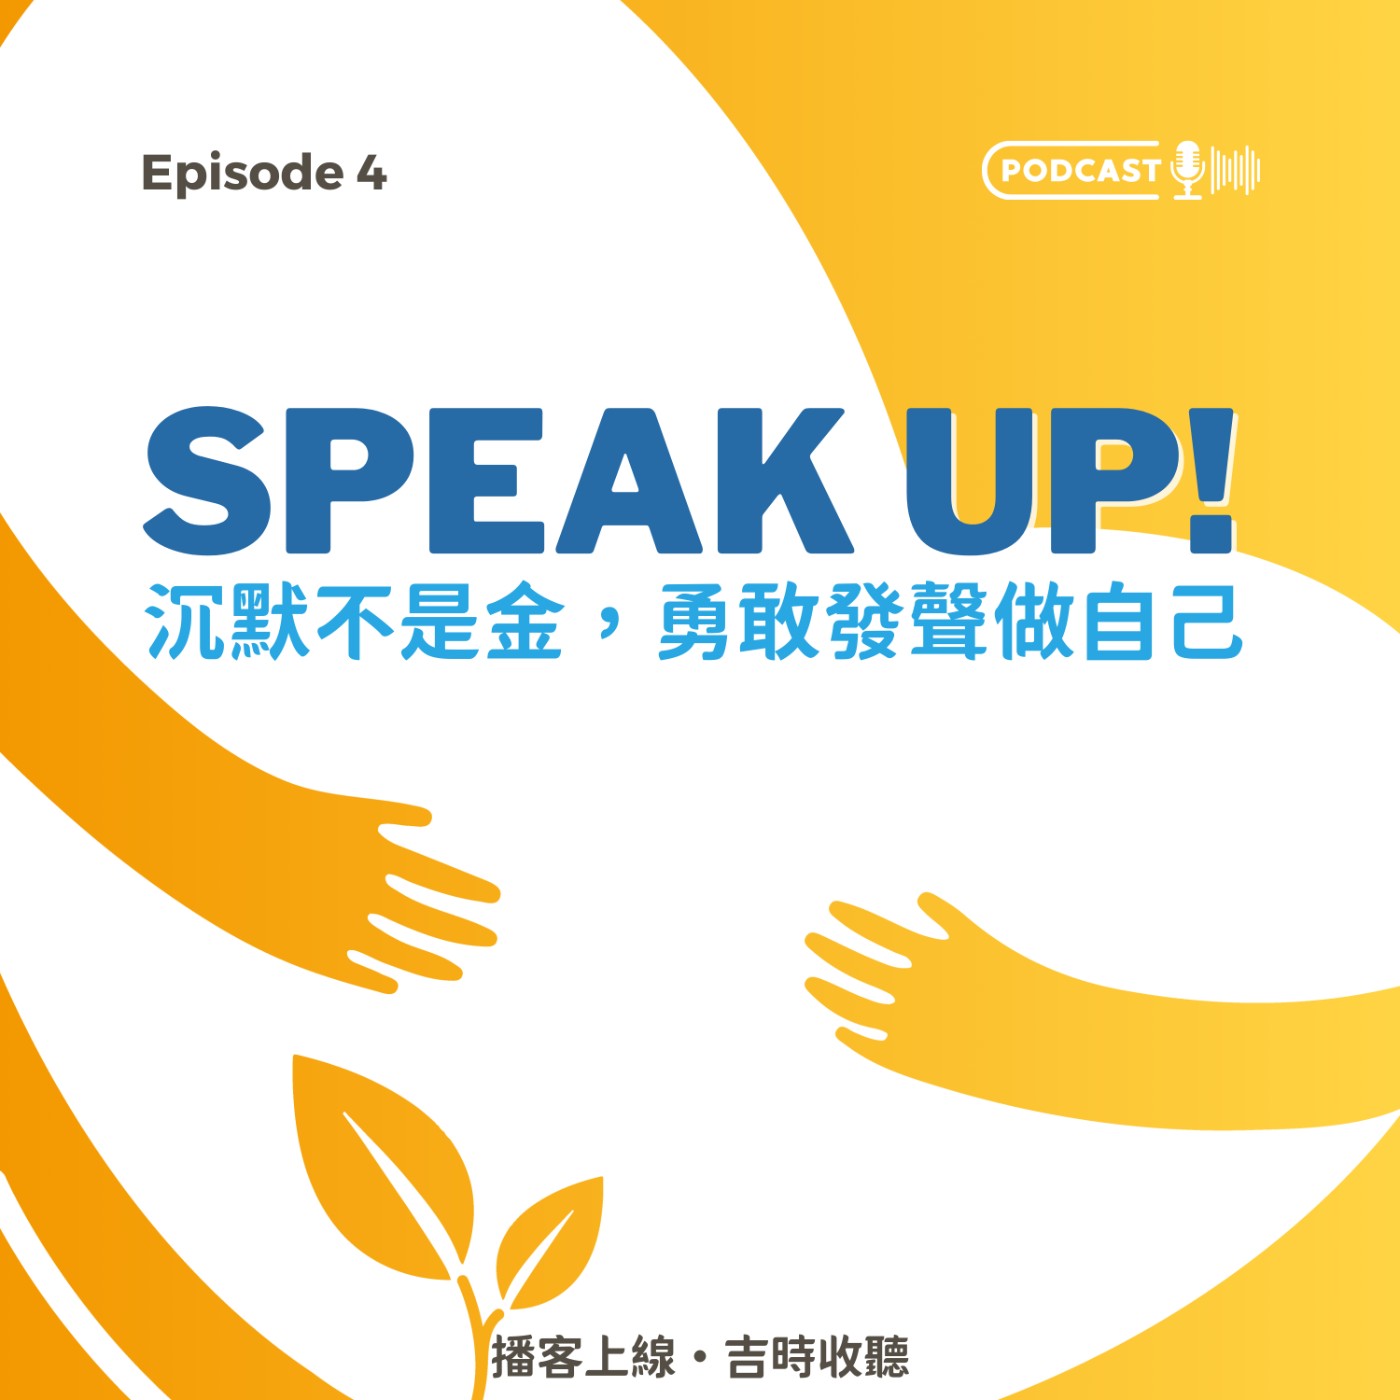 EP4｜Speak Up! 沉默不是金，勇敢發聲做自己！